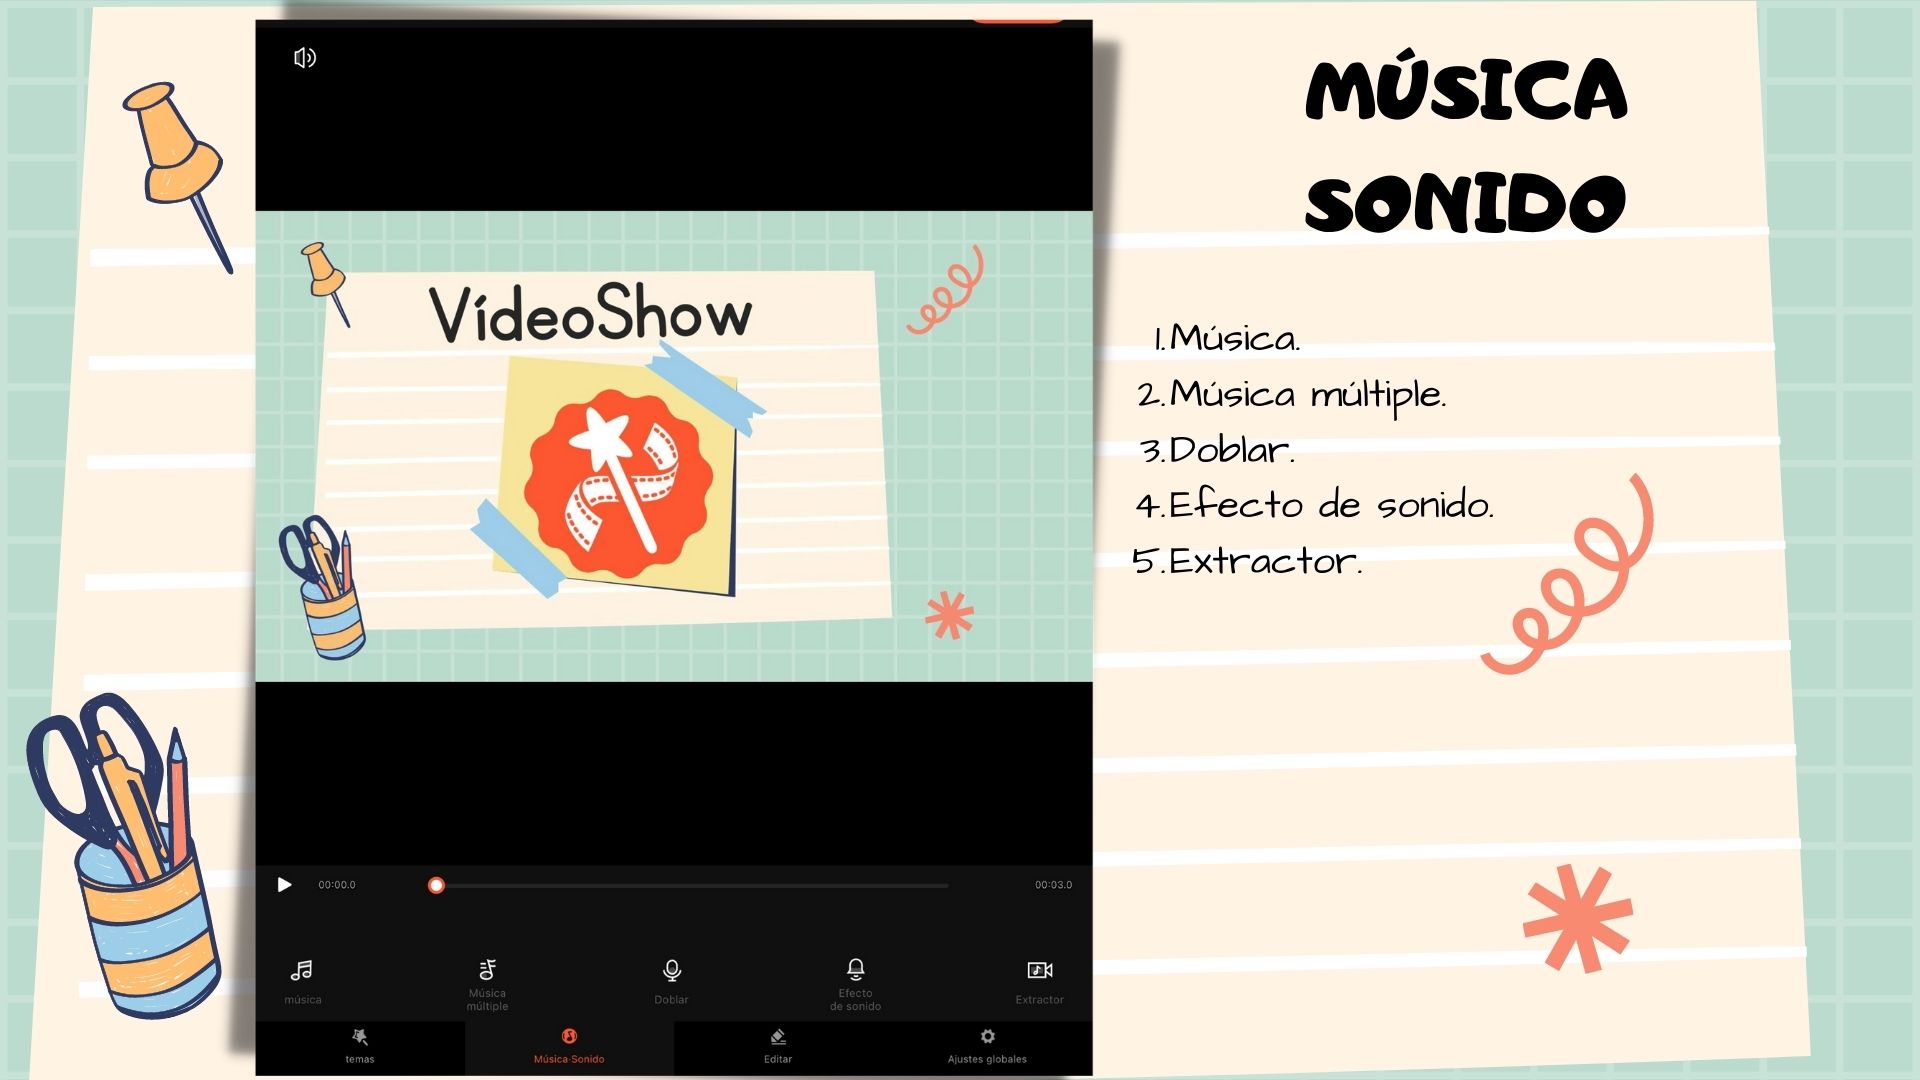 Imagen 9. Sección Música-sonido en VideoShow.